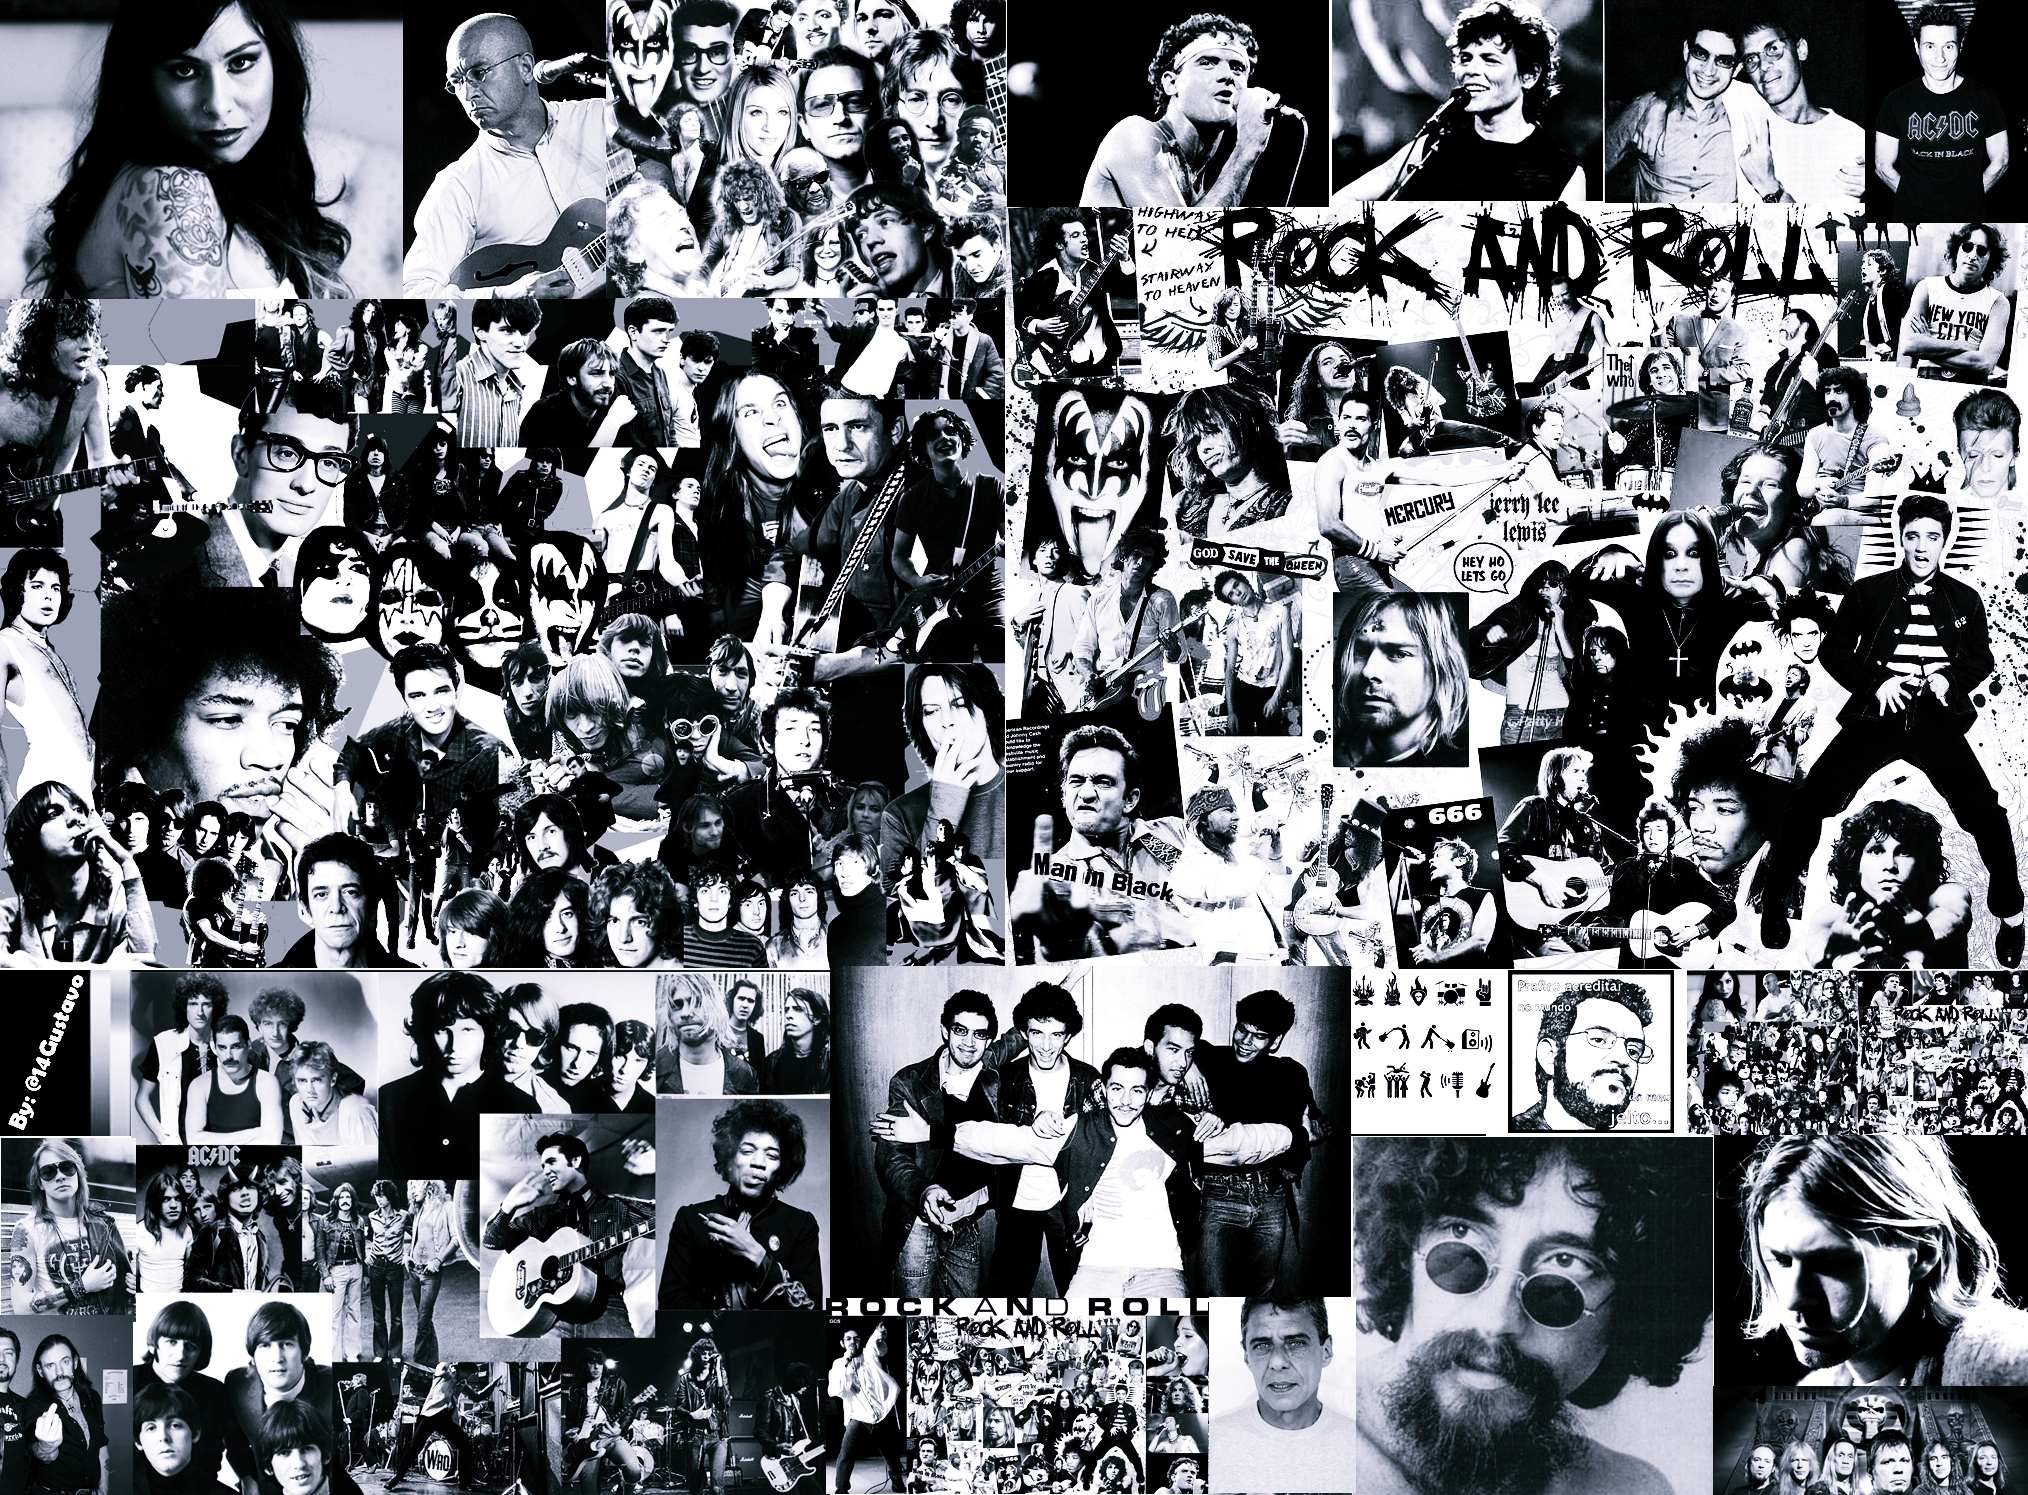 47+] Rock and Roll Wallpapers - WallpaperSafari